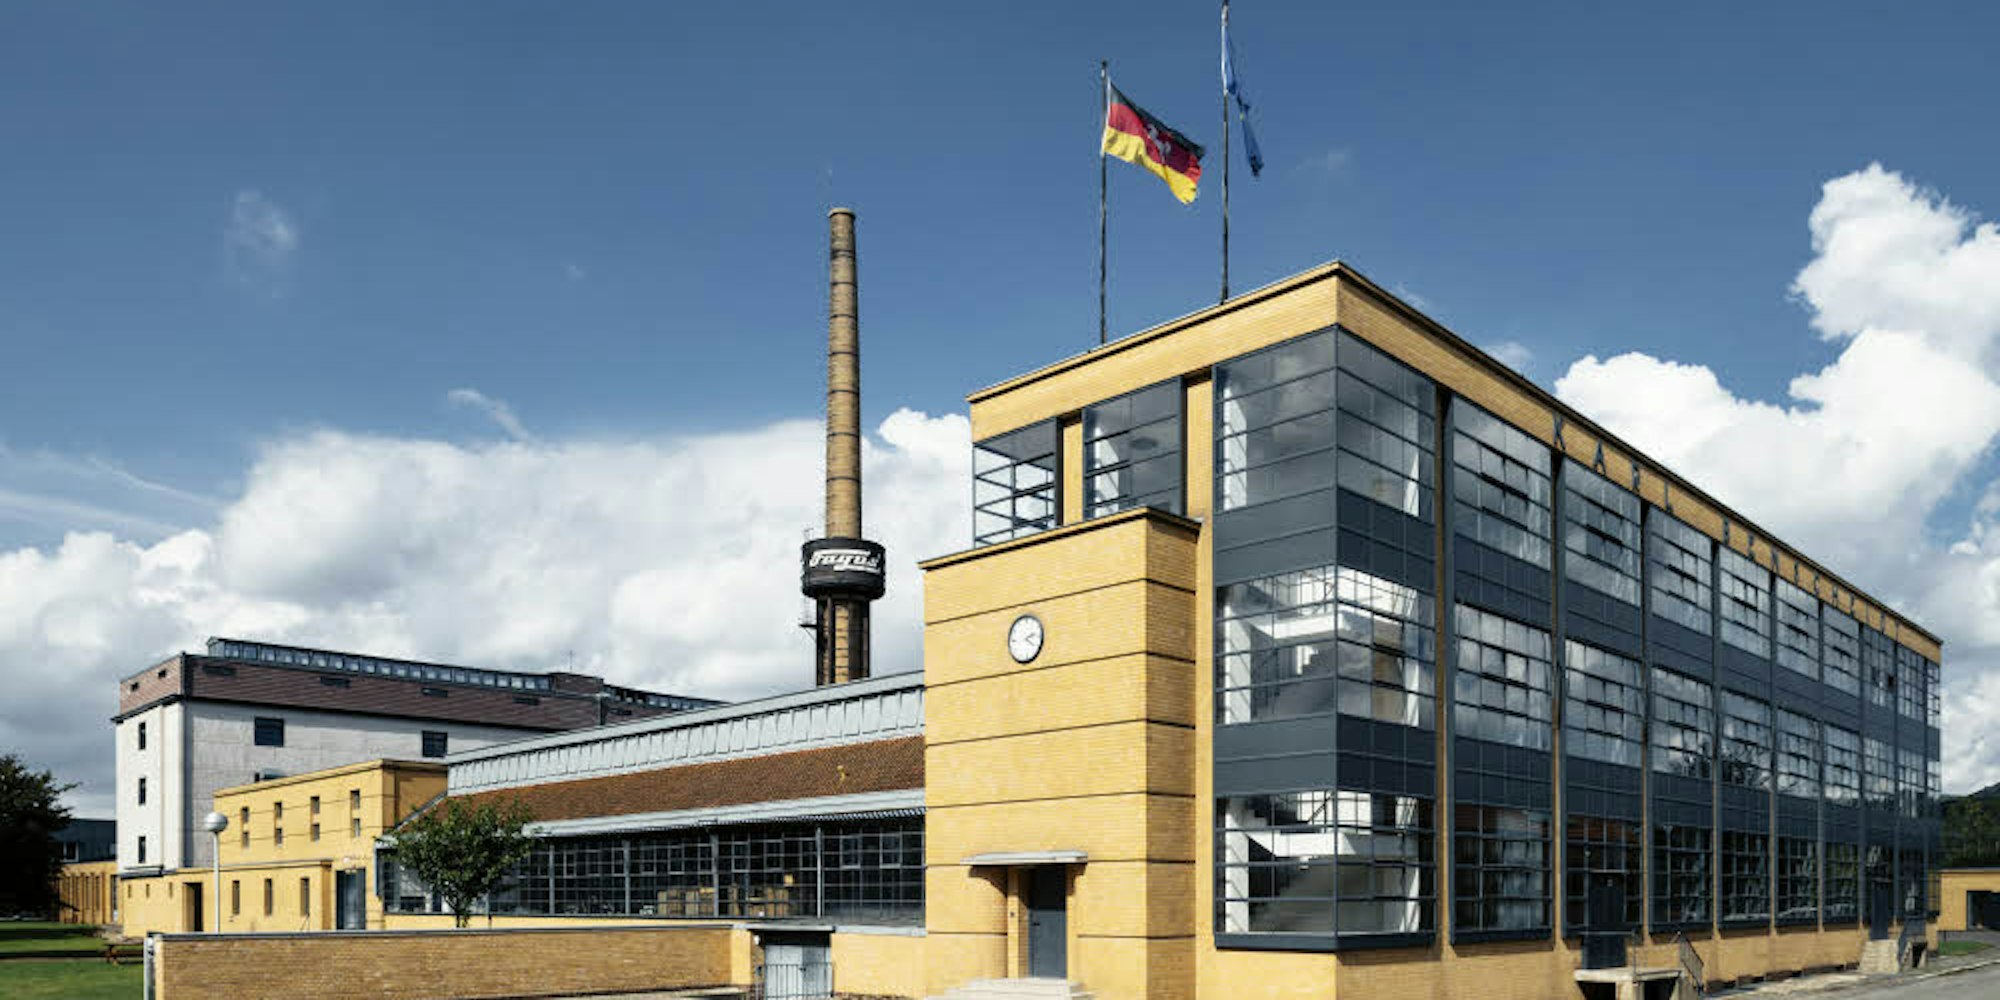 Meilenstein der Bauhaus-Moderne: Walter Gropius’ Fagus-Werk in Alfeld